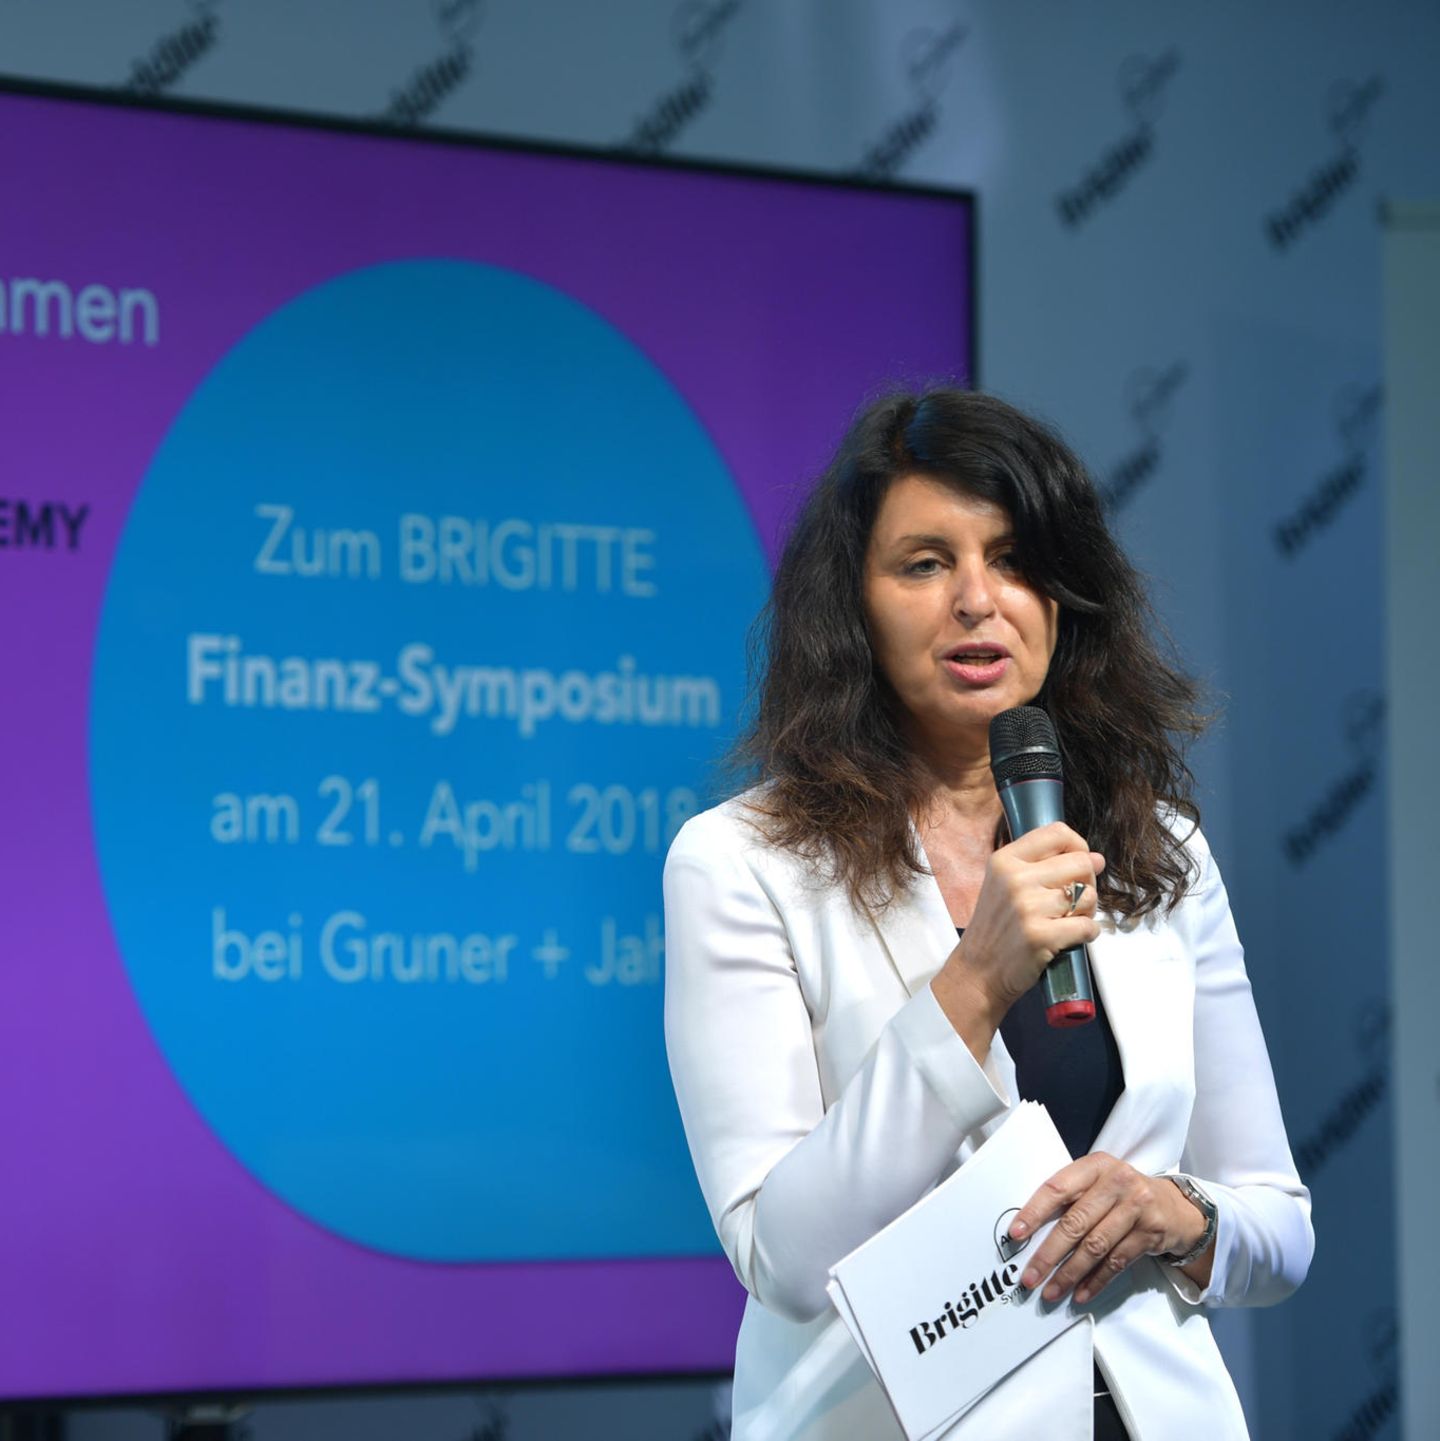 "Finanzielle Unabhängigkeit ist der Schlüssel zur Gleichberechtigung" - BRIGITTE-Chefredakteurin Brigitte Huber.